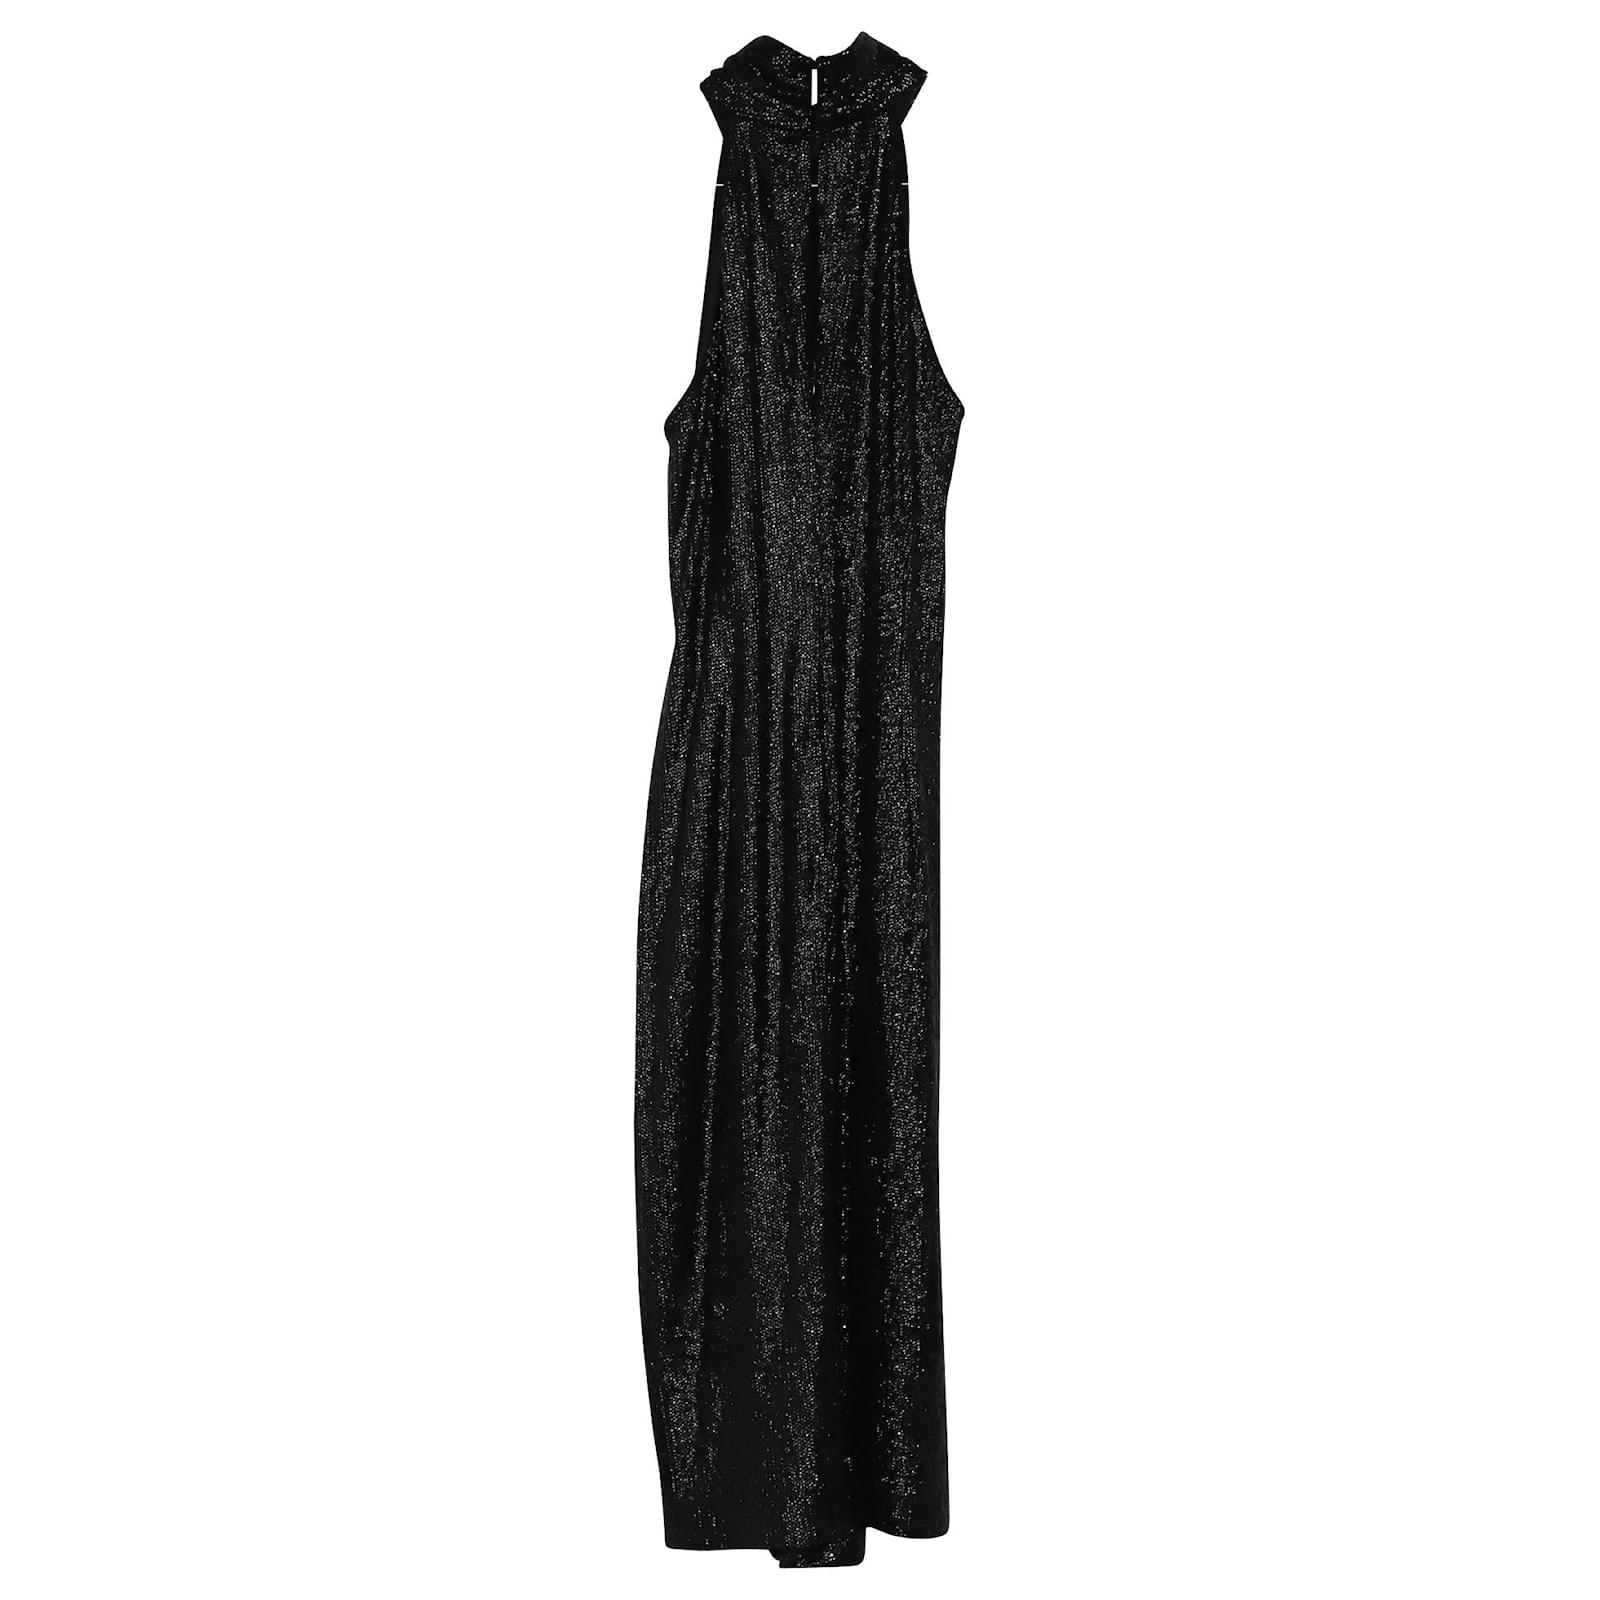 Rachel Zoe Halter Sequin Dress in Black ...